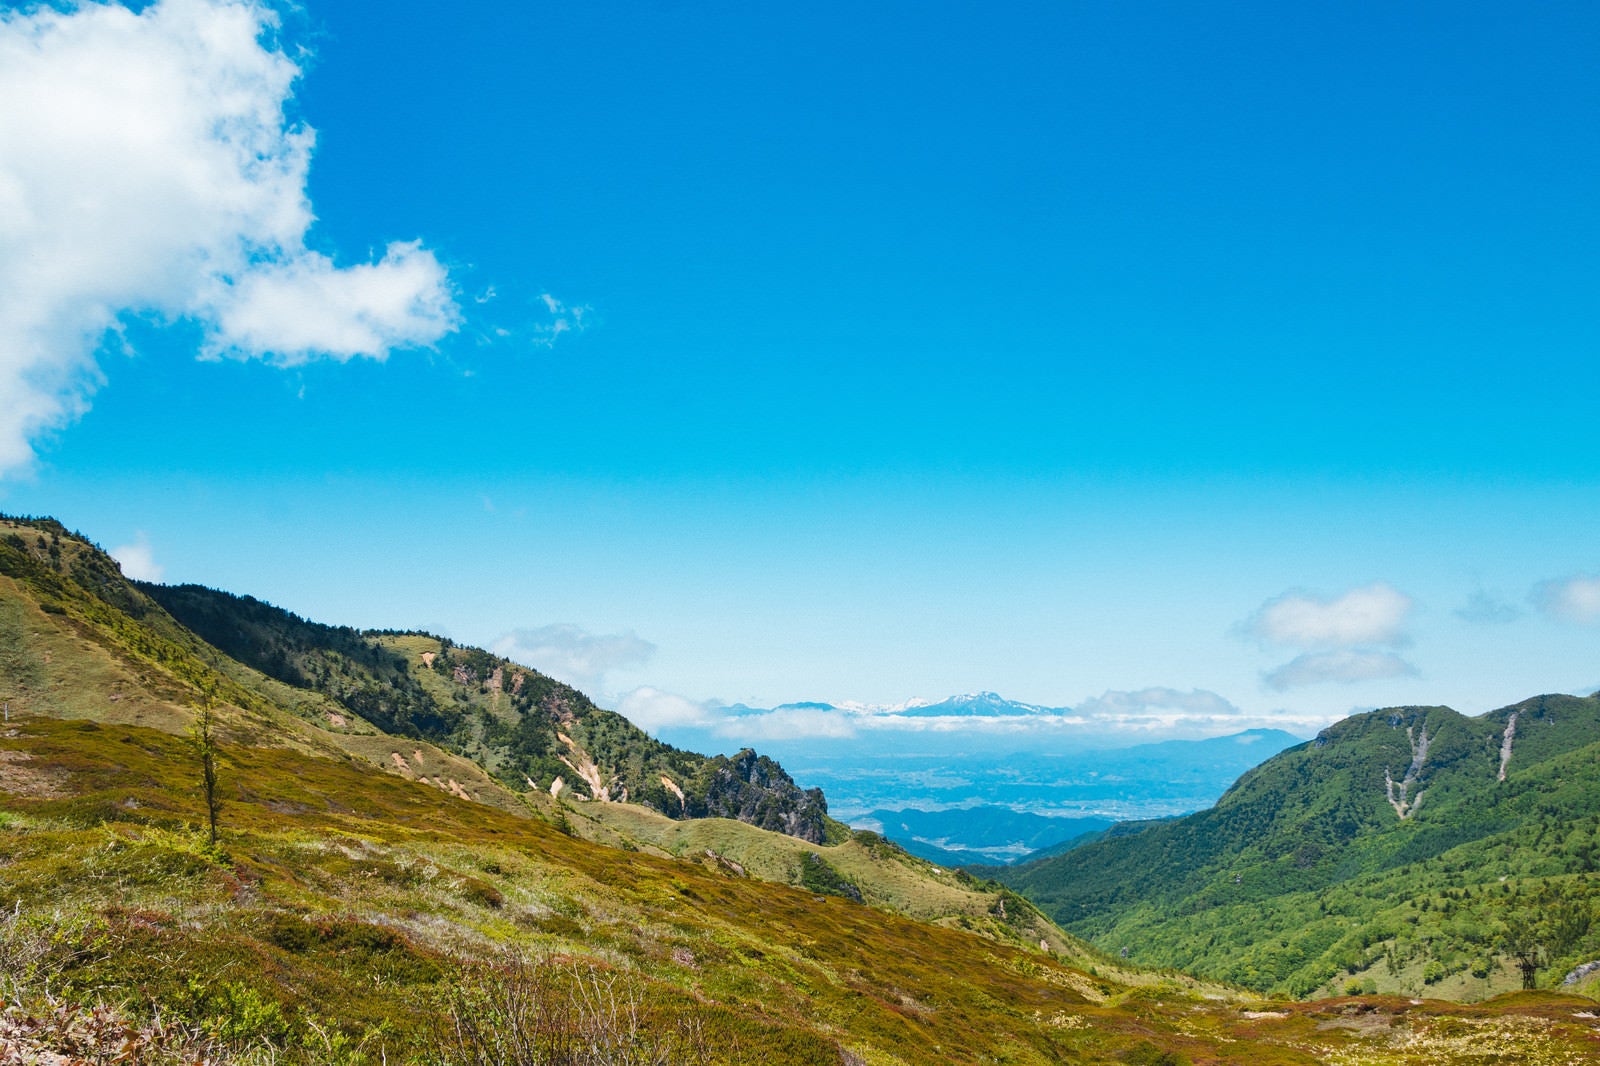 「群馬県にある毛無峠から見える景観」の写真